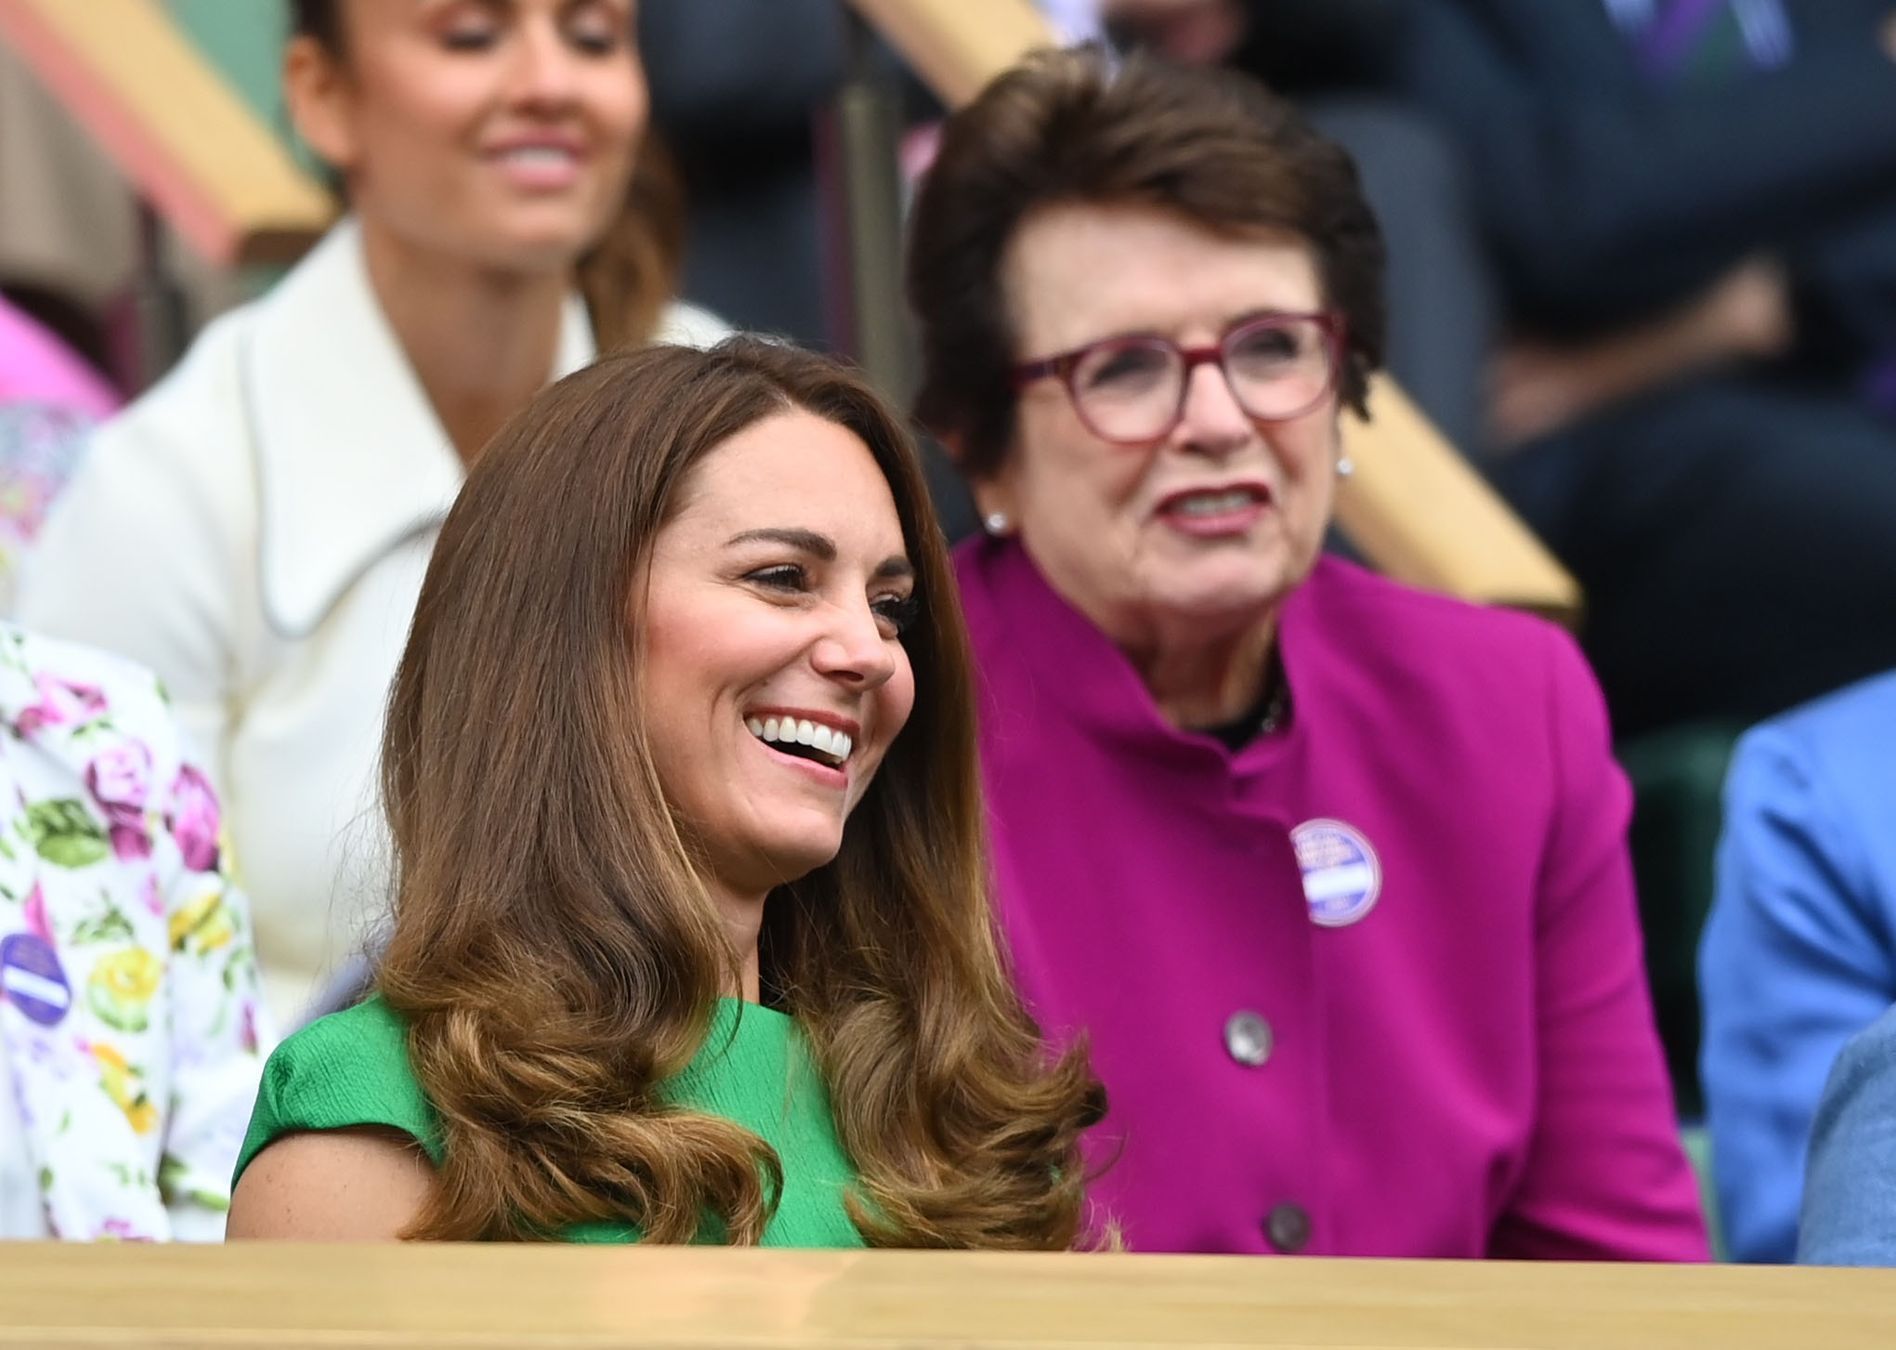 Catherine a vévodkyně z Cambridge a Billie Jean Kingová v hledišti finále Wimbledonu 2021 Karolína Plíšková - Ashleigh Bartyová.